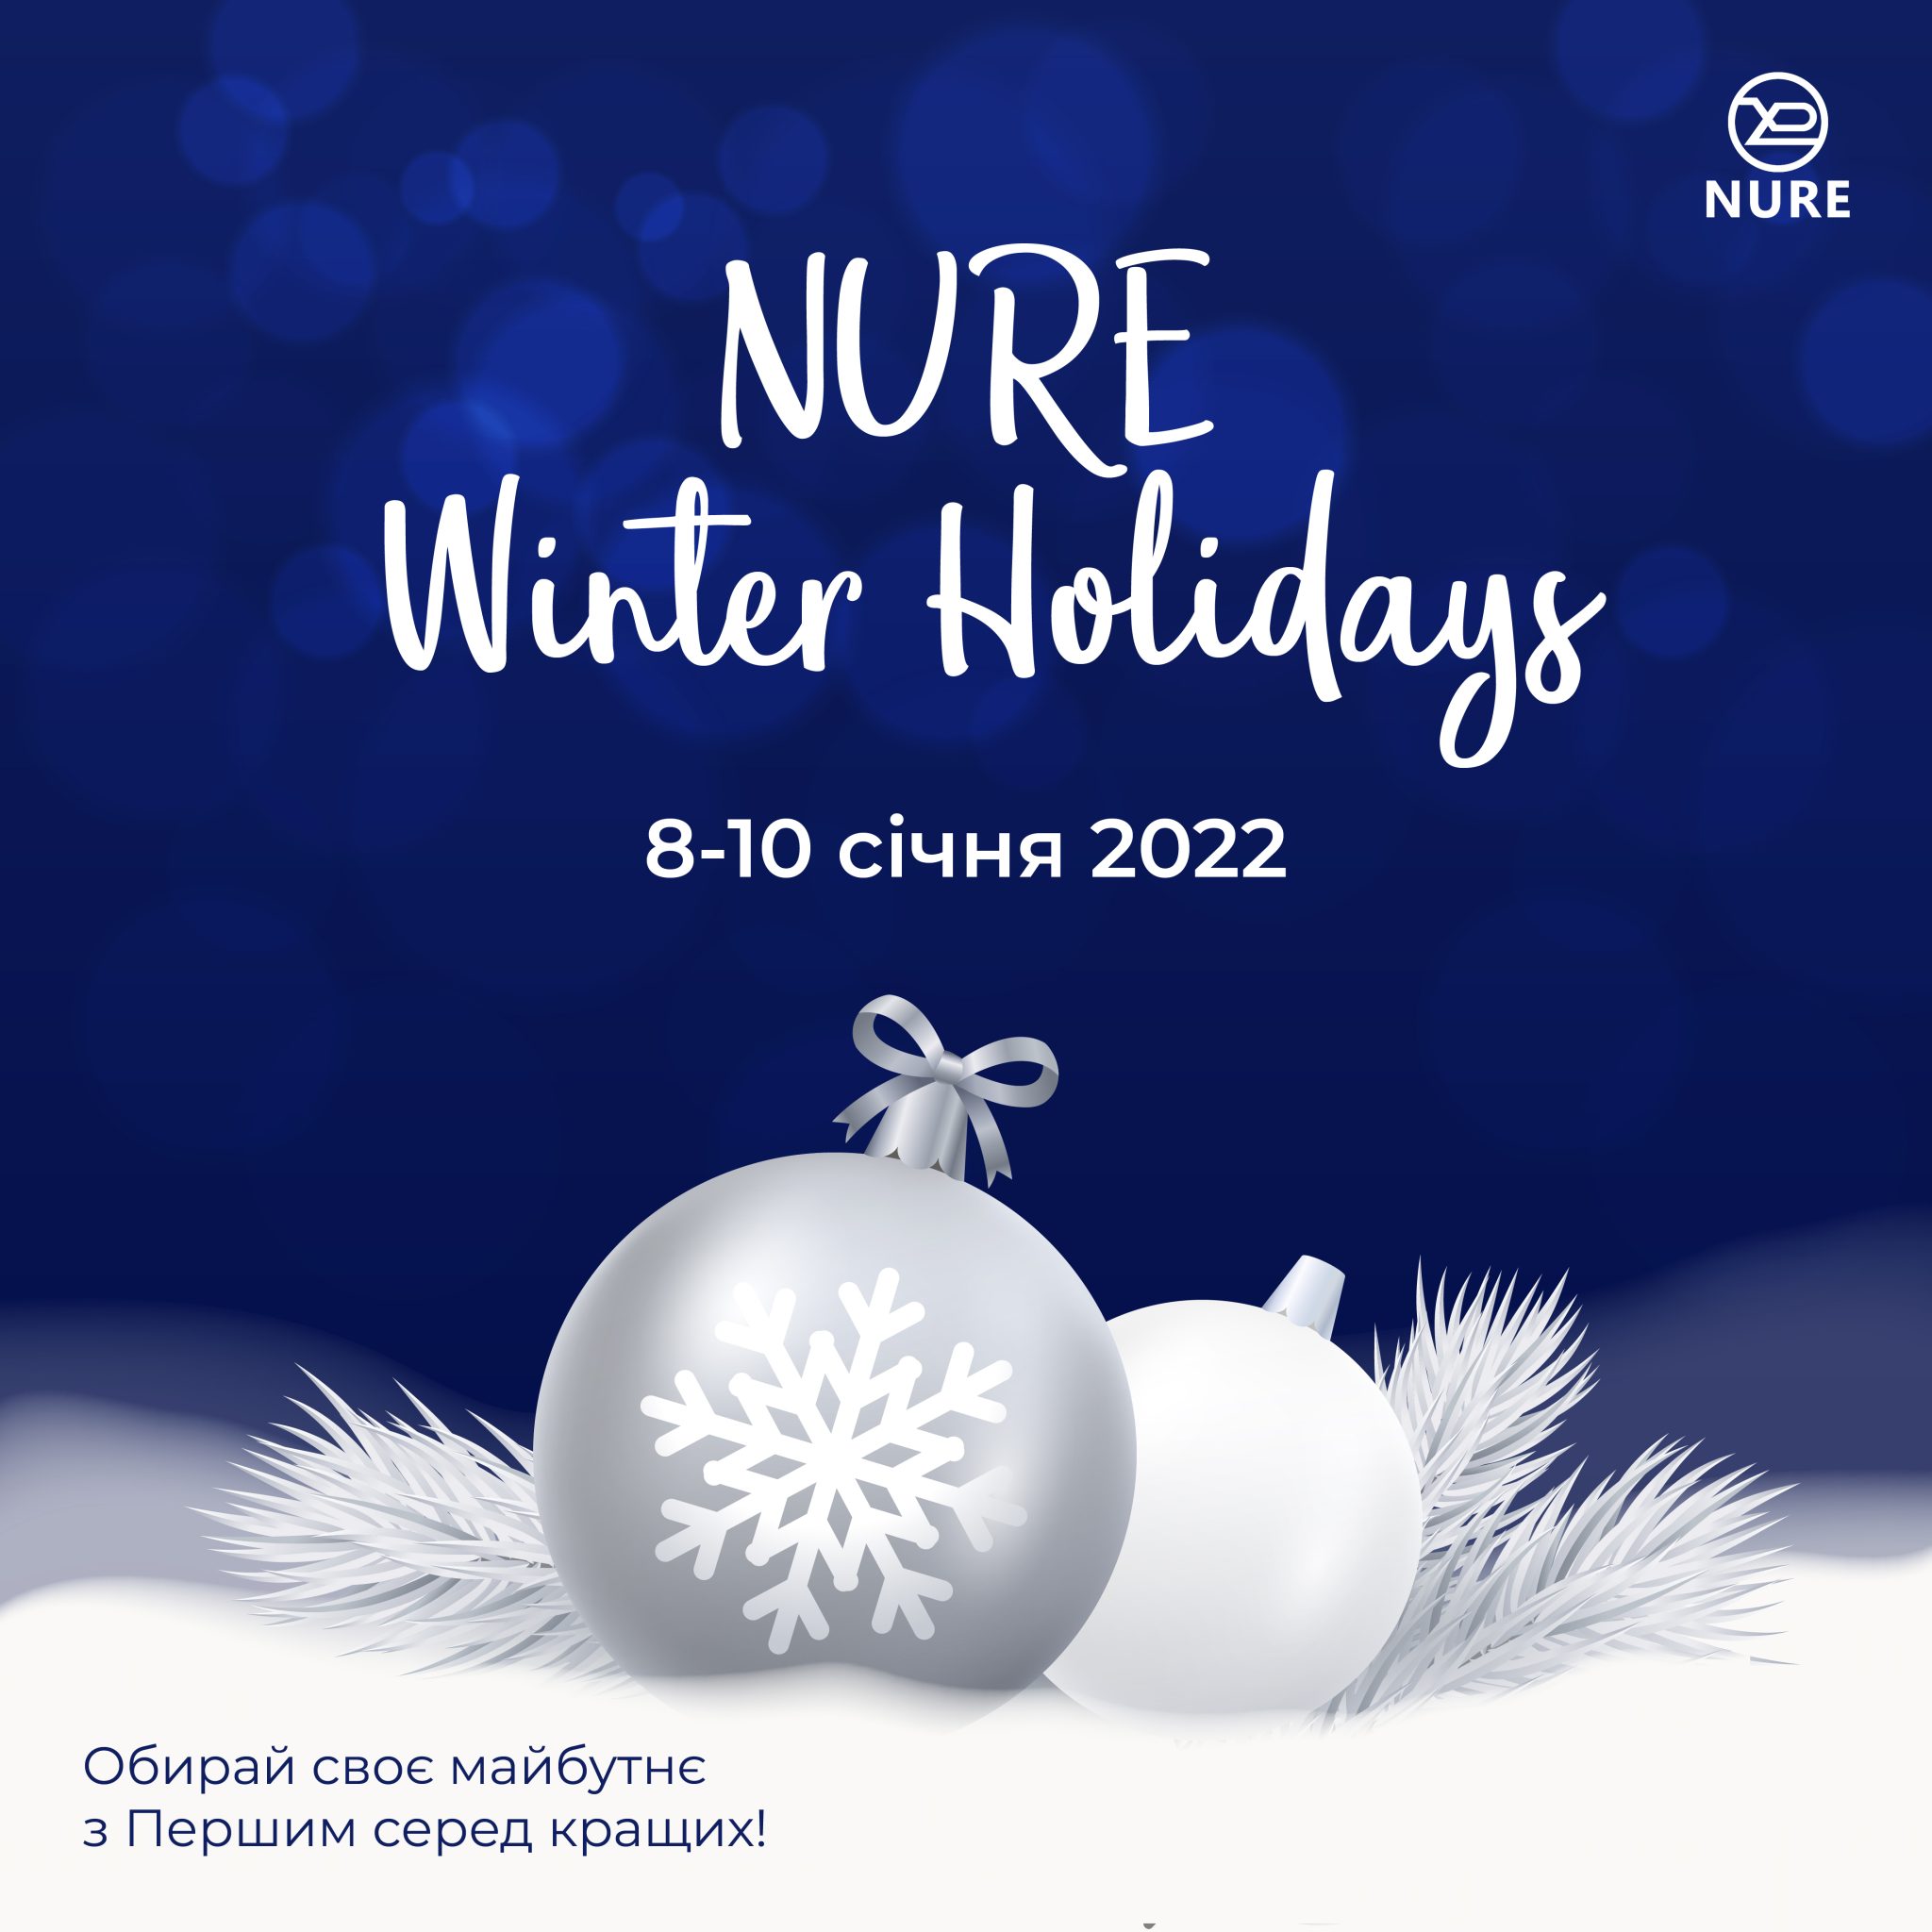 Nure Winter Holidays 2022 в ХНУРЭ